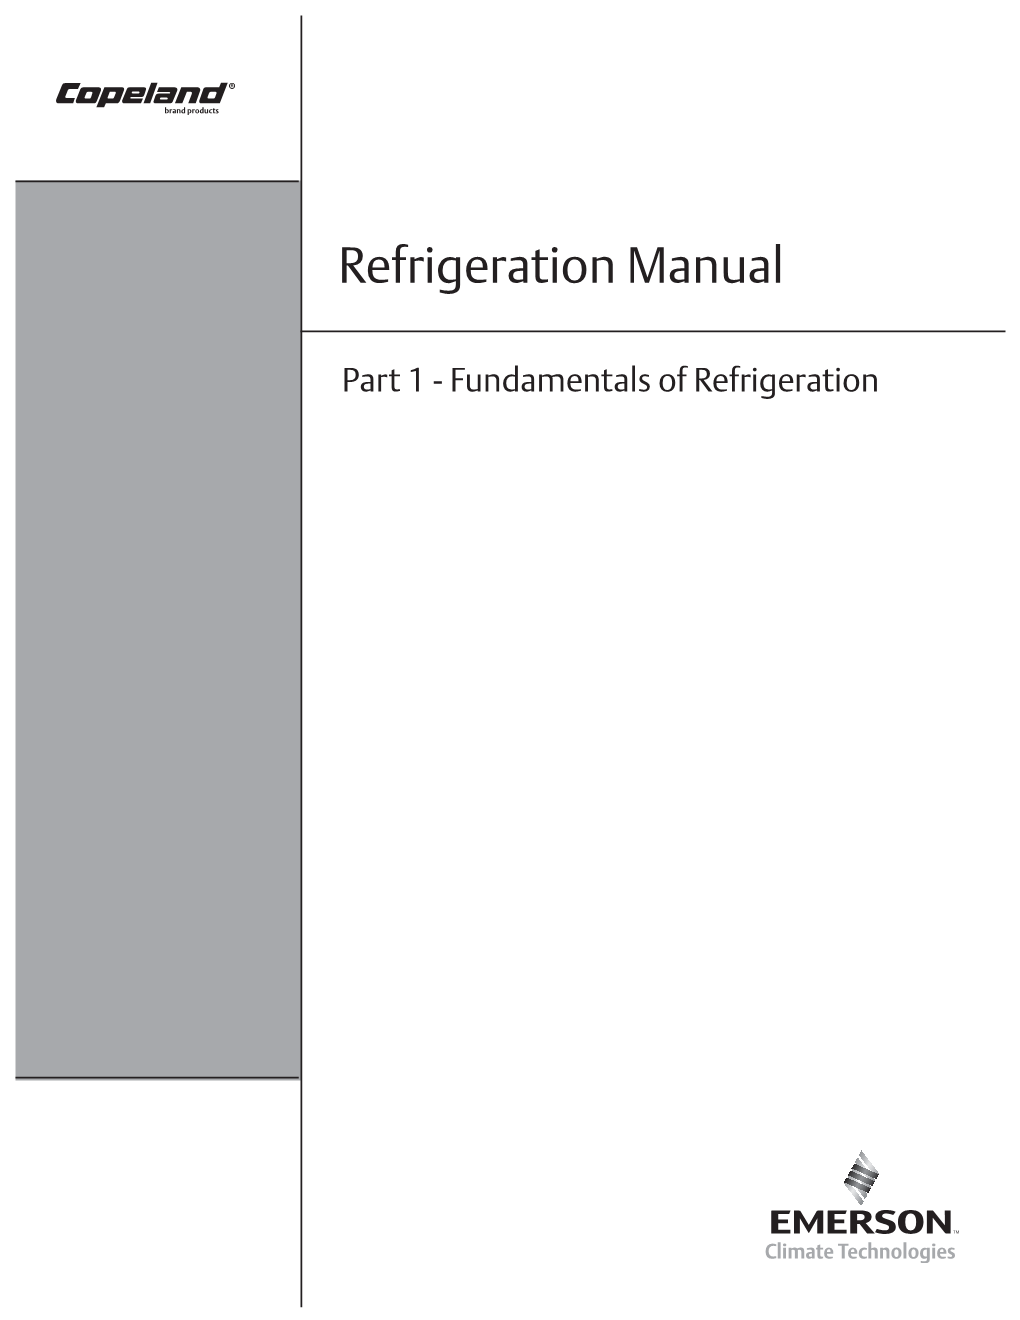 Fundamentals of Refrigeration FOREWORD